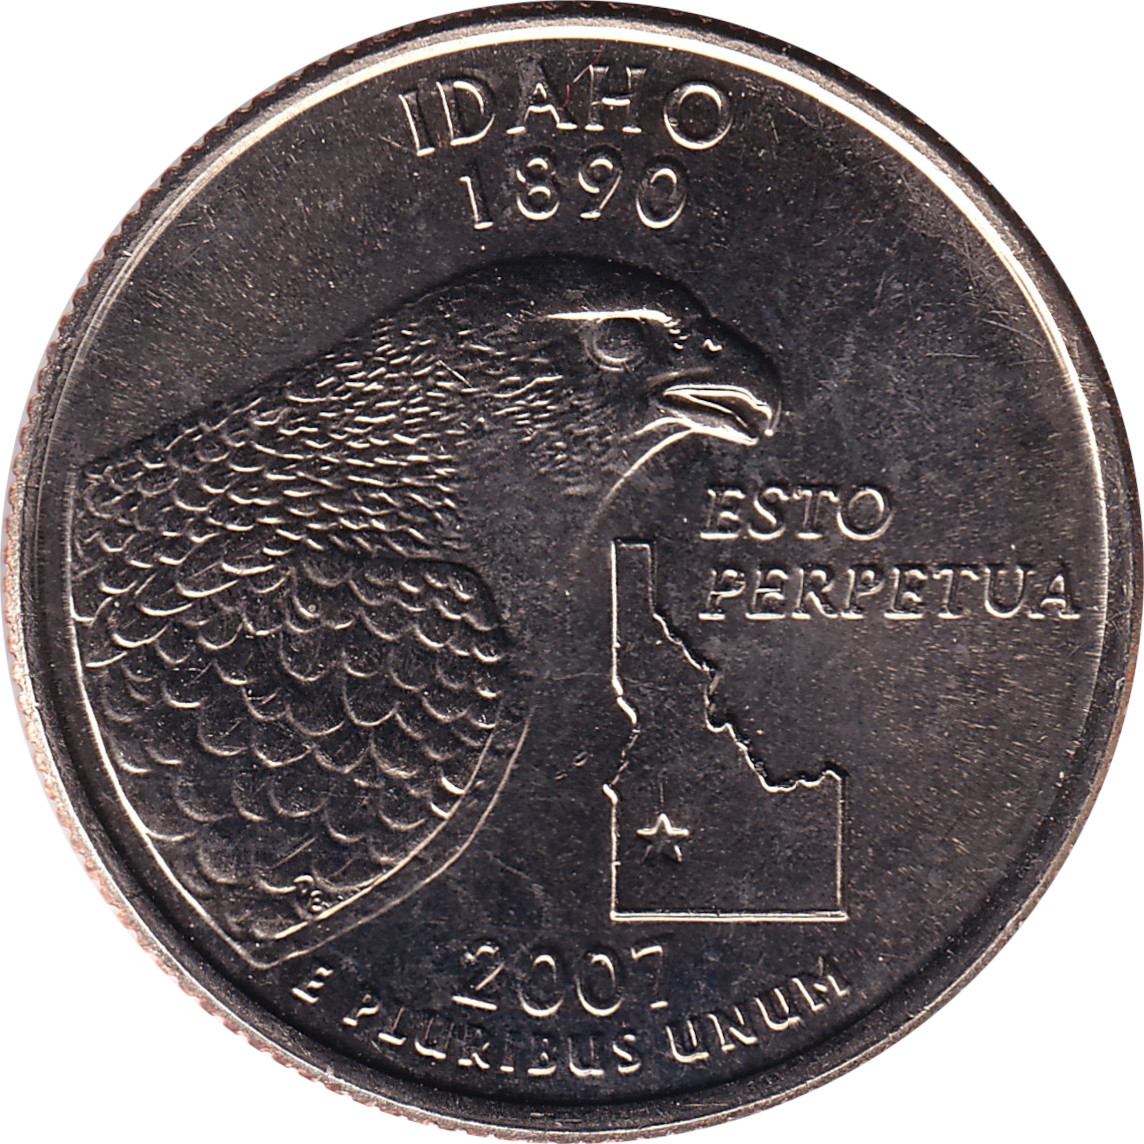 1/4 dollar - Idaho